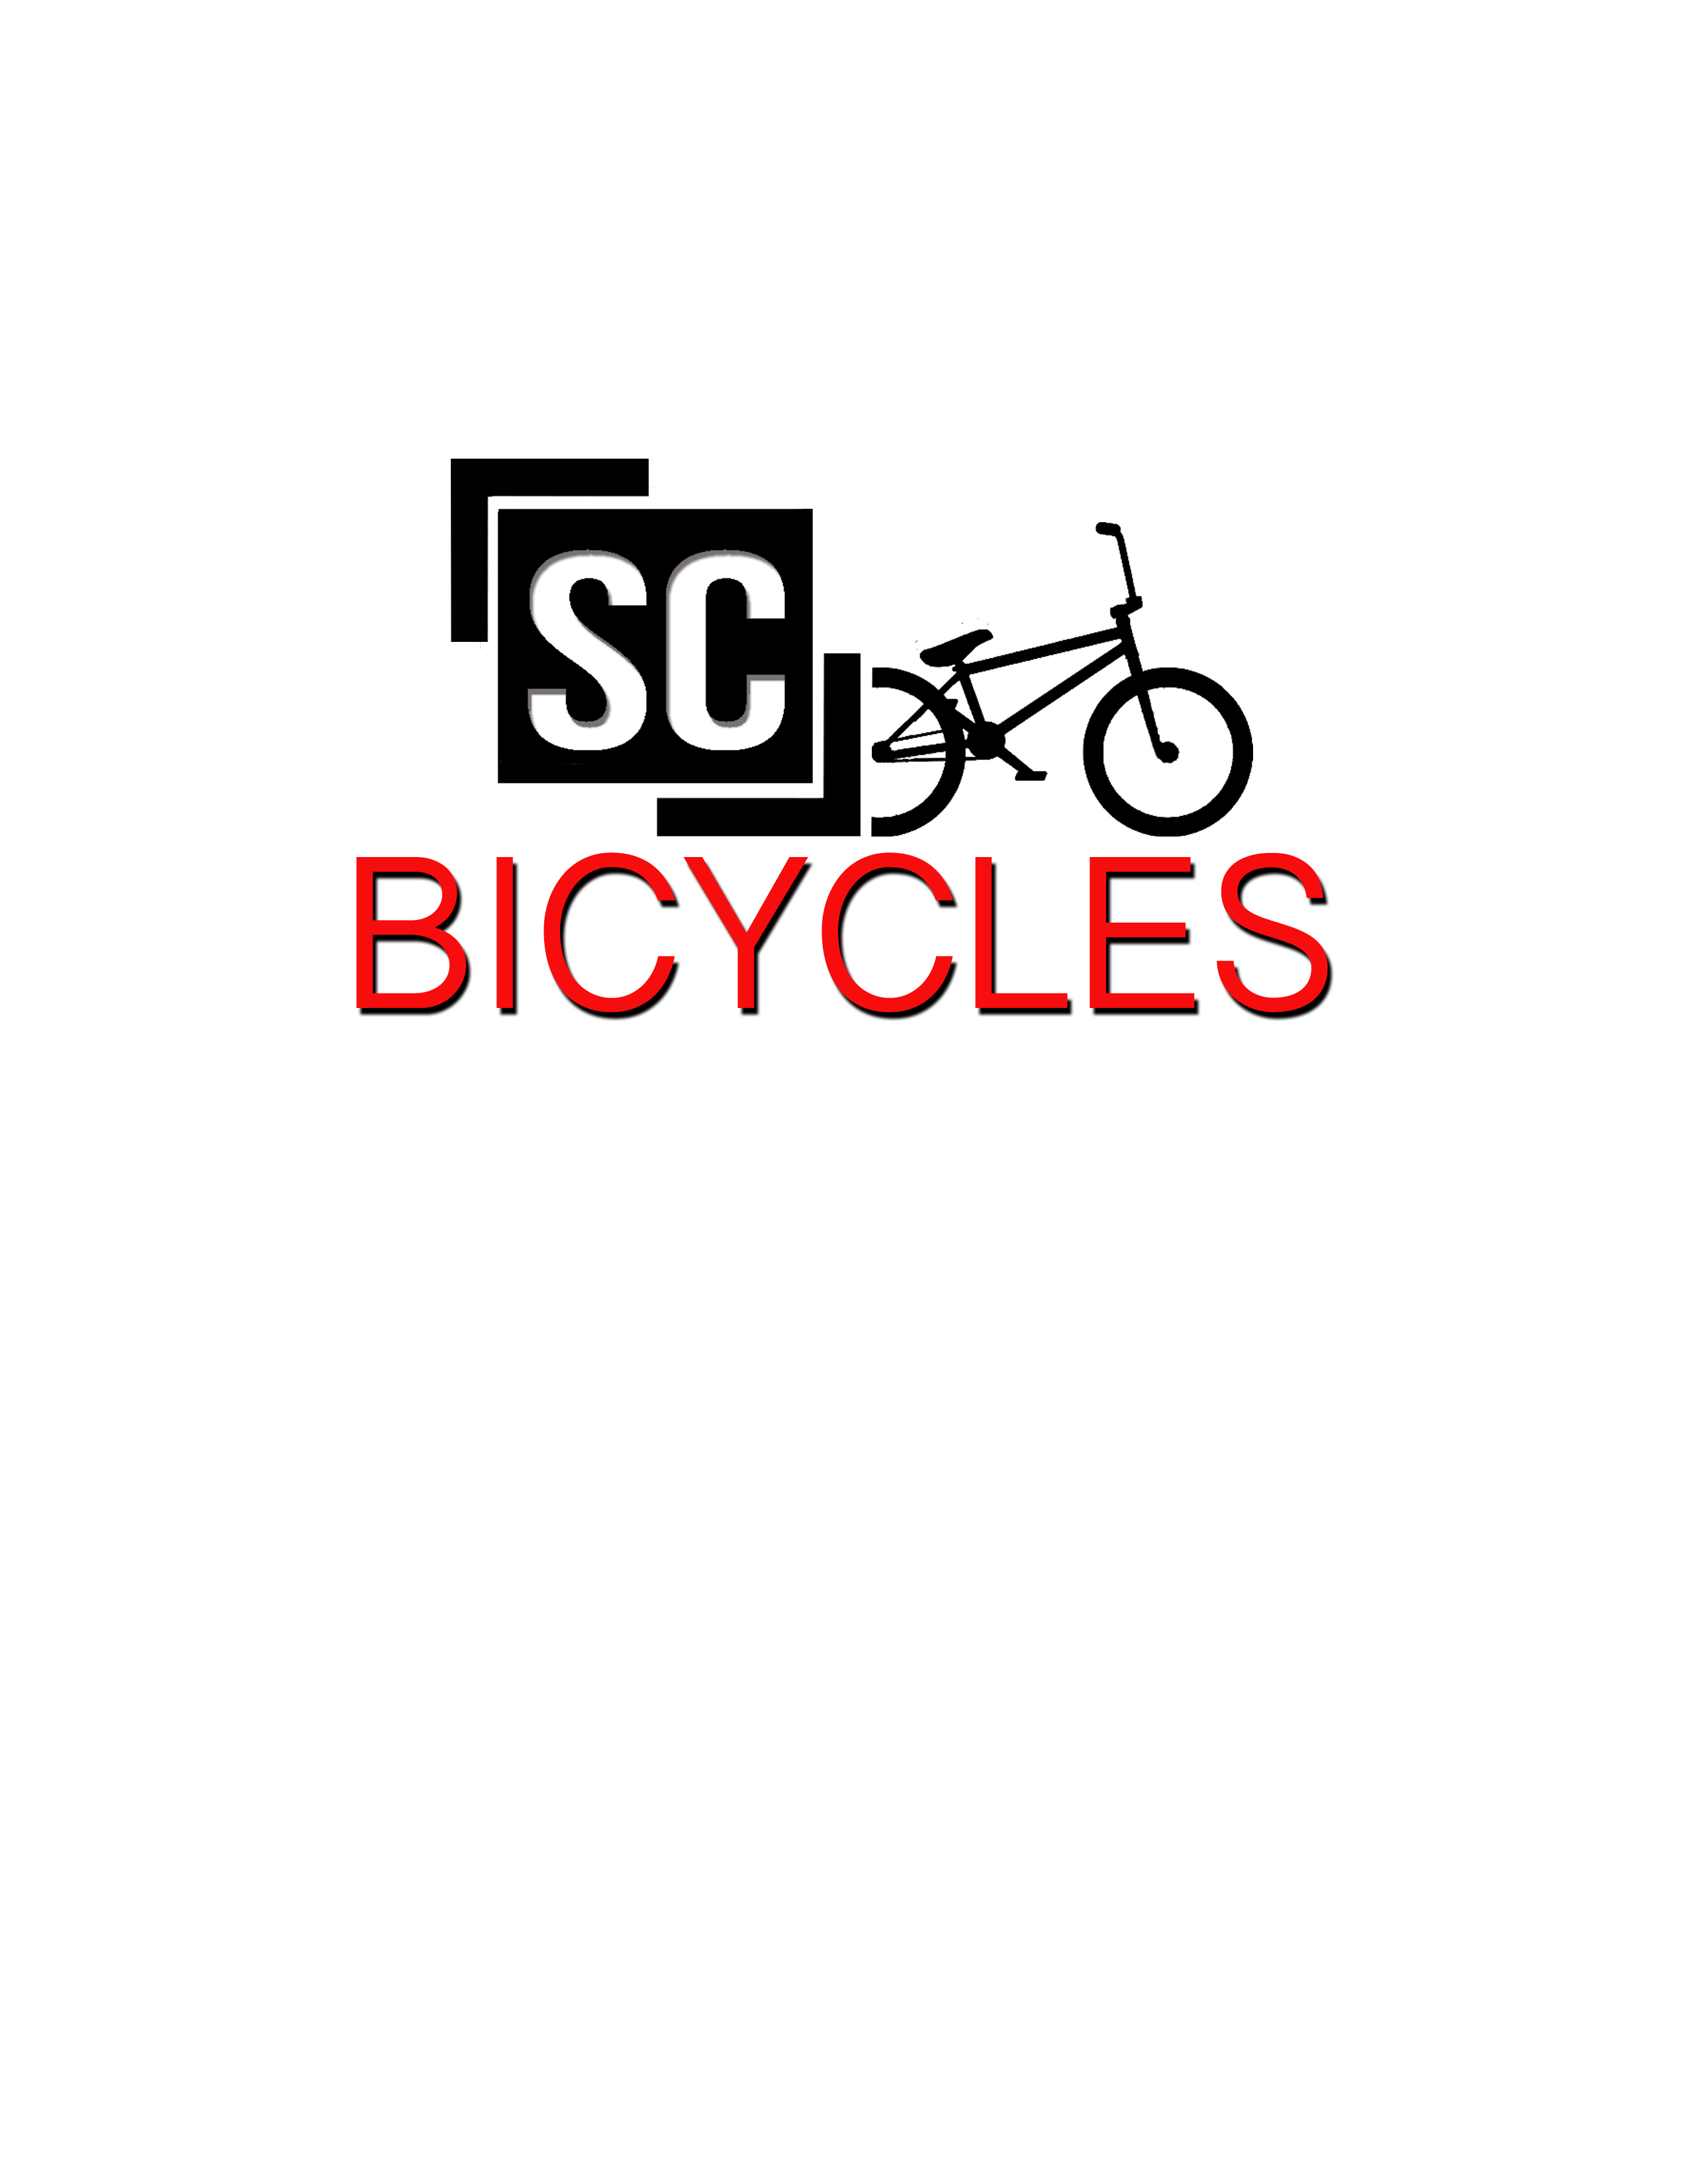 www.scbicycles.com